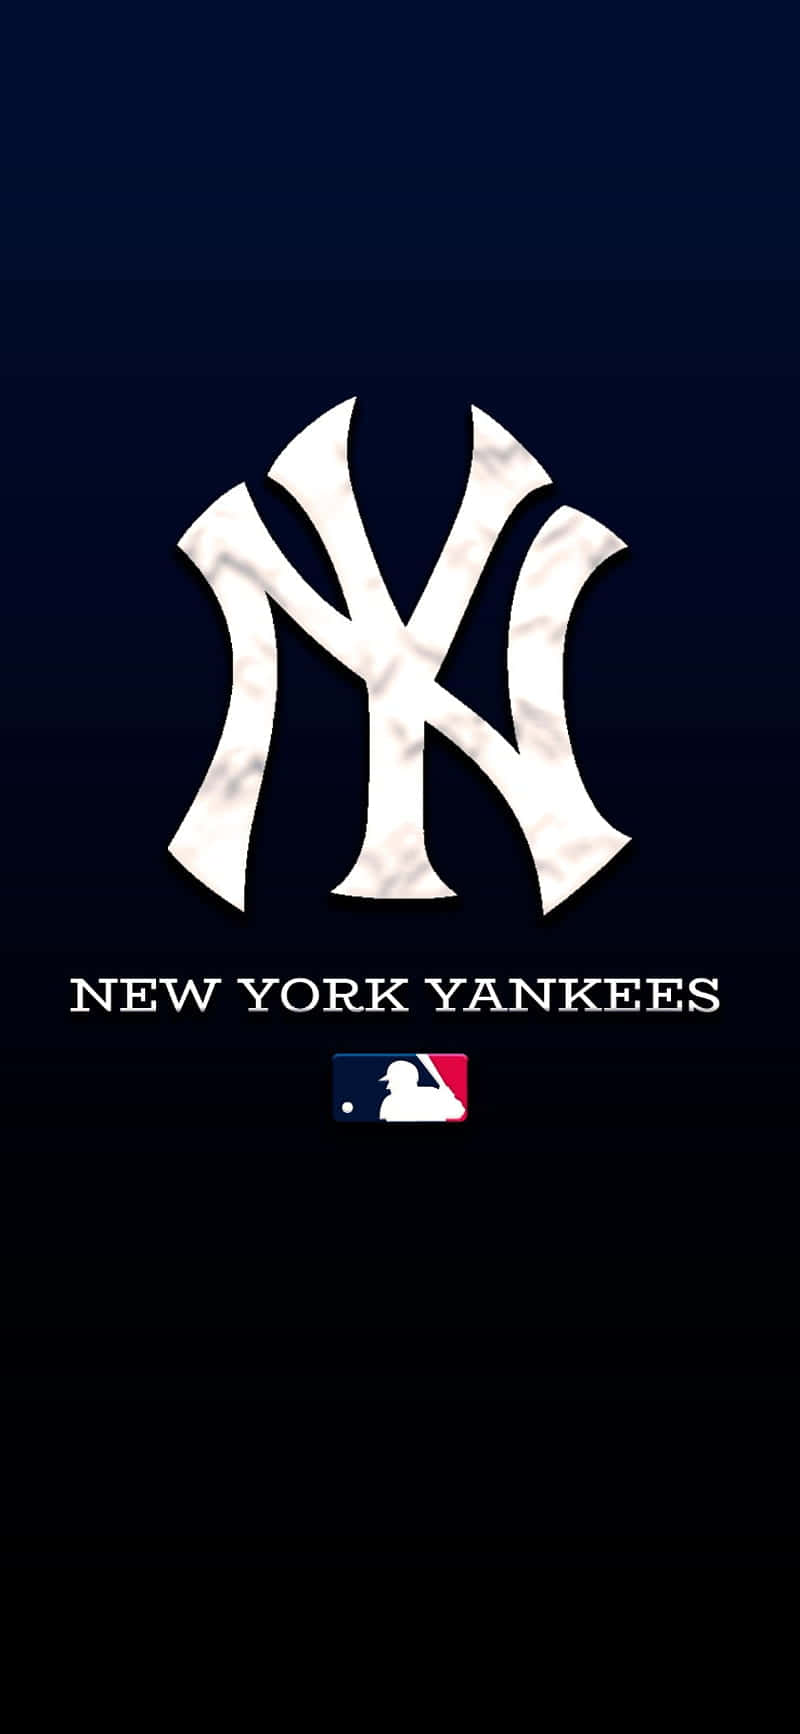 Leveo Seu Orgulho Pelo Ny Yankees Para Todos Os Lugares Com Uma Capa Oficial Para Iphone! Papel de Parede